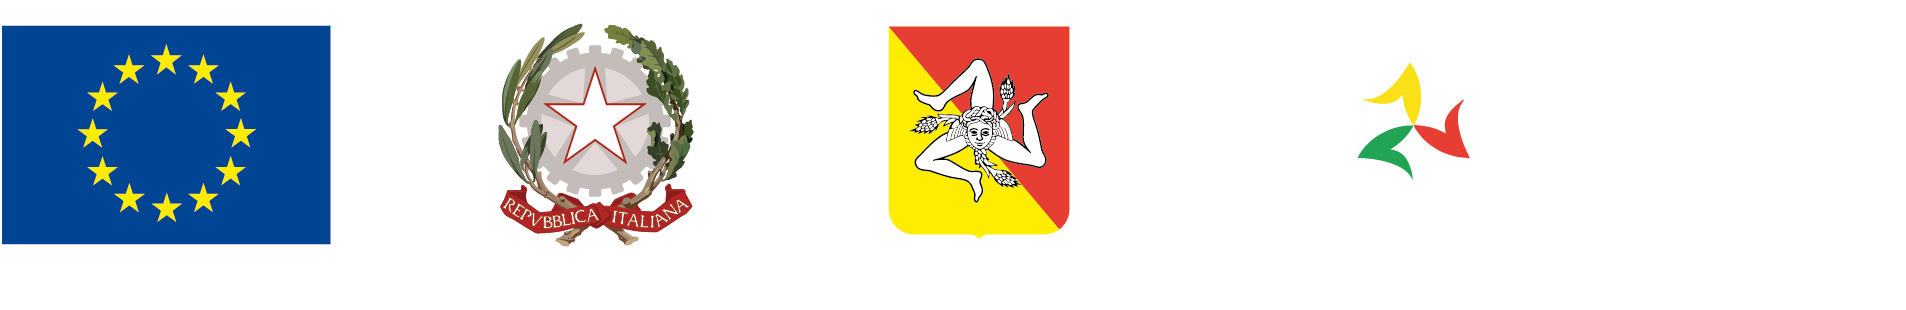 PO FESR Sicilia 2014/2020